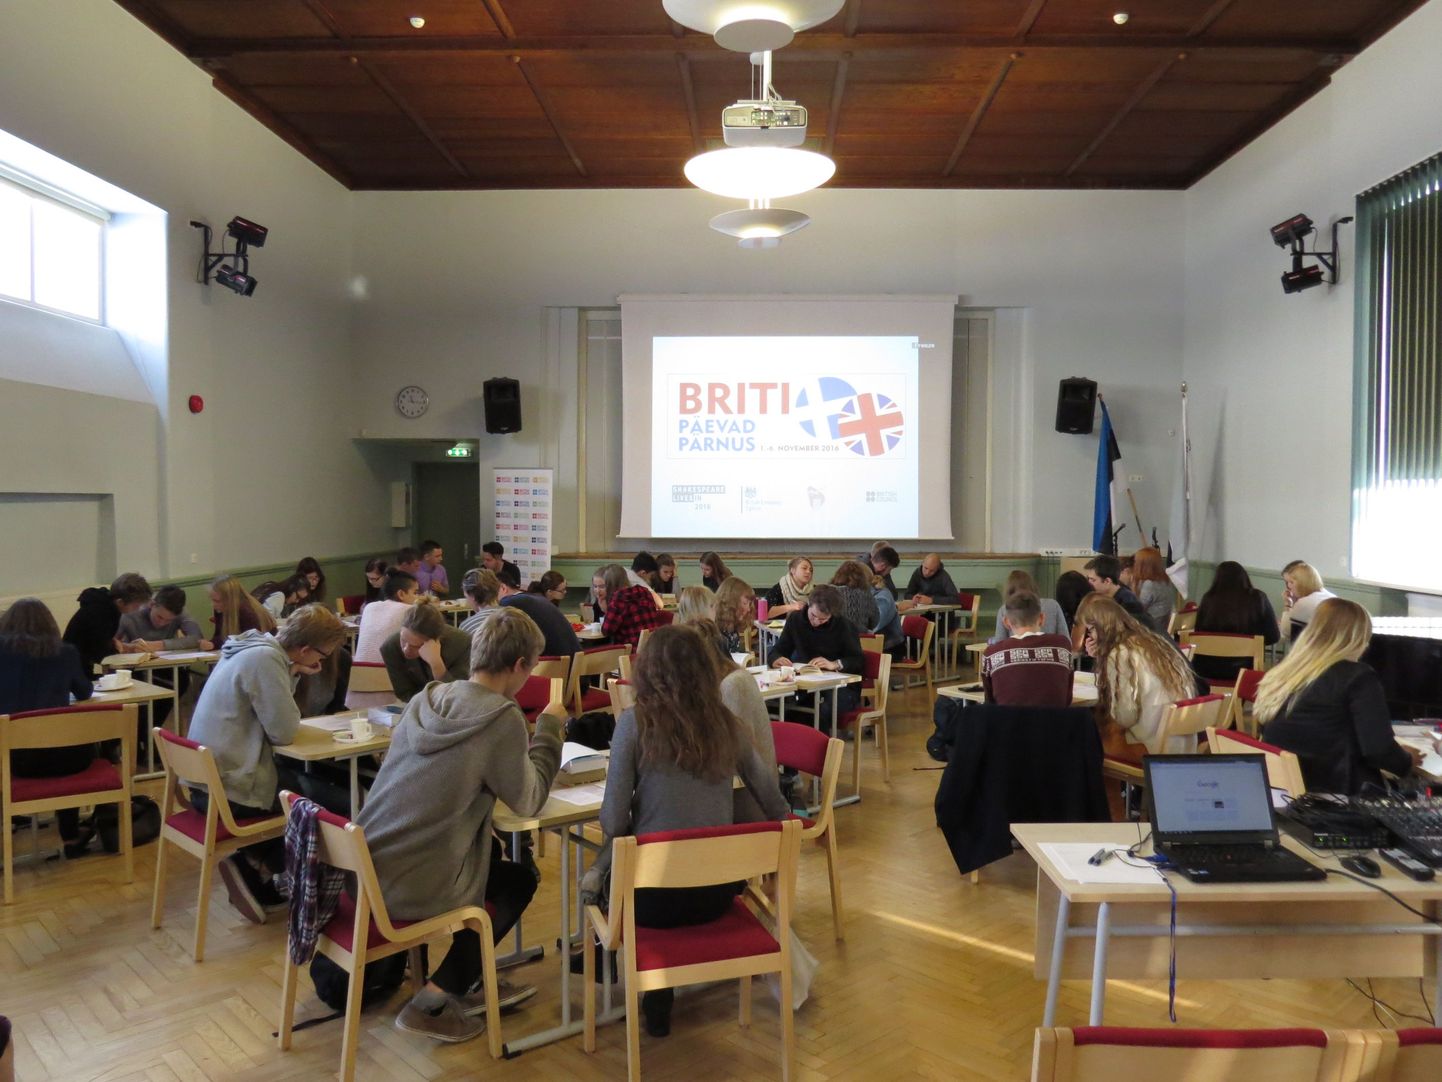 1.-5. novembrini Pärnus toimunud Briti päevade raames korraldas Pärnu ühisgümnaasium 3. novembril koolidevahelise tõlkevõistluse ja viktoriini.